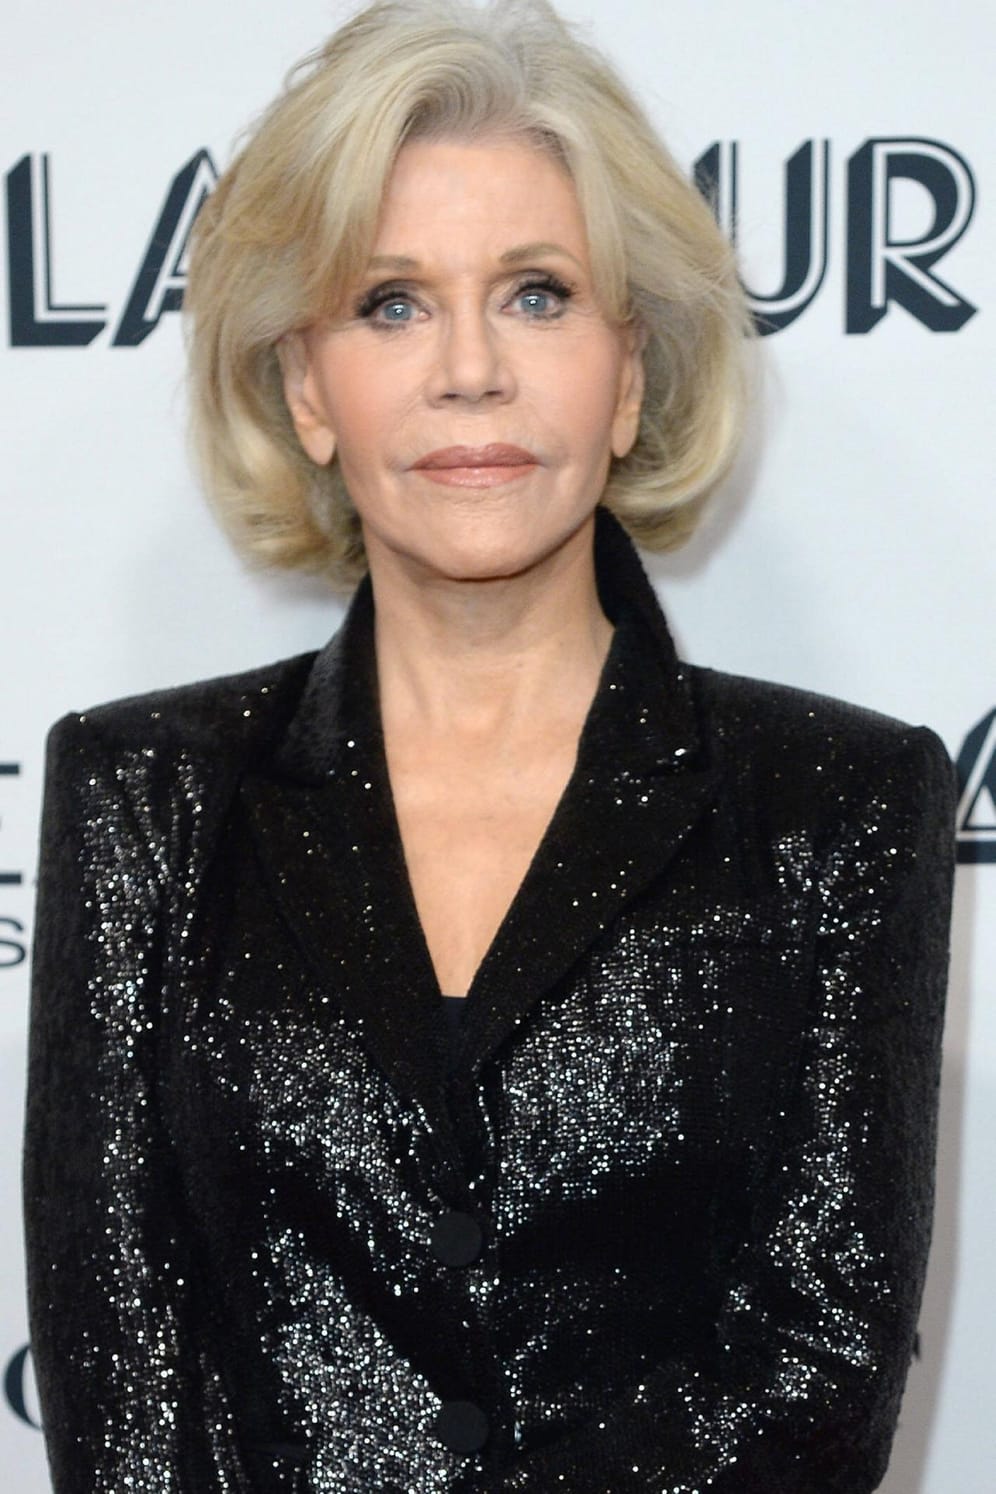 Jane Fonda: Der "Grace and Frankie"-Star erkrankte 2010 an Brustkrebs und ließ sich die Brust sechs Jahre später abnehmen. Im Januar 2018 offenbarte Jane Fonda zudem, dass eine Krebs-Geschwulst aus ihrer unteren Lippe entfernt werden musste.